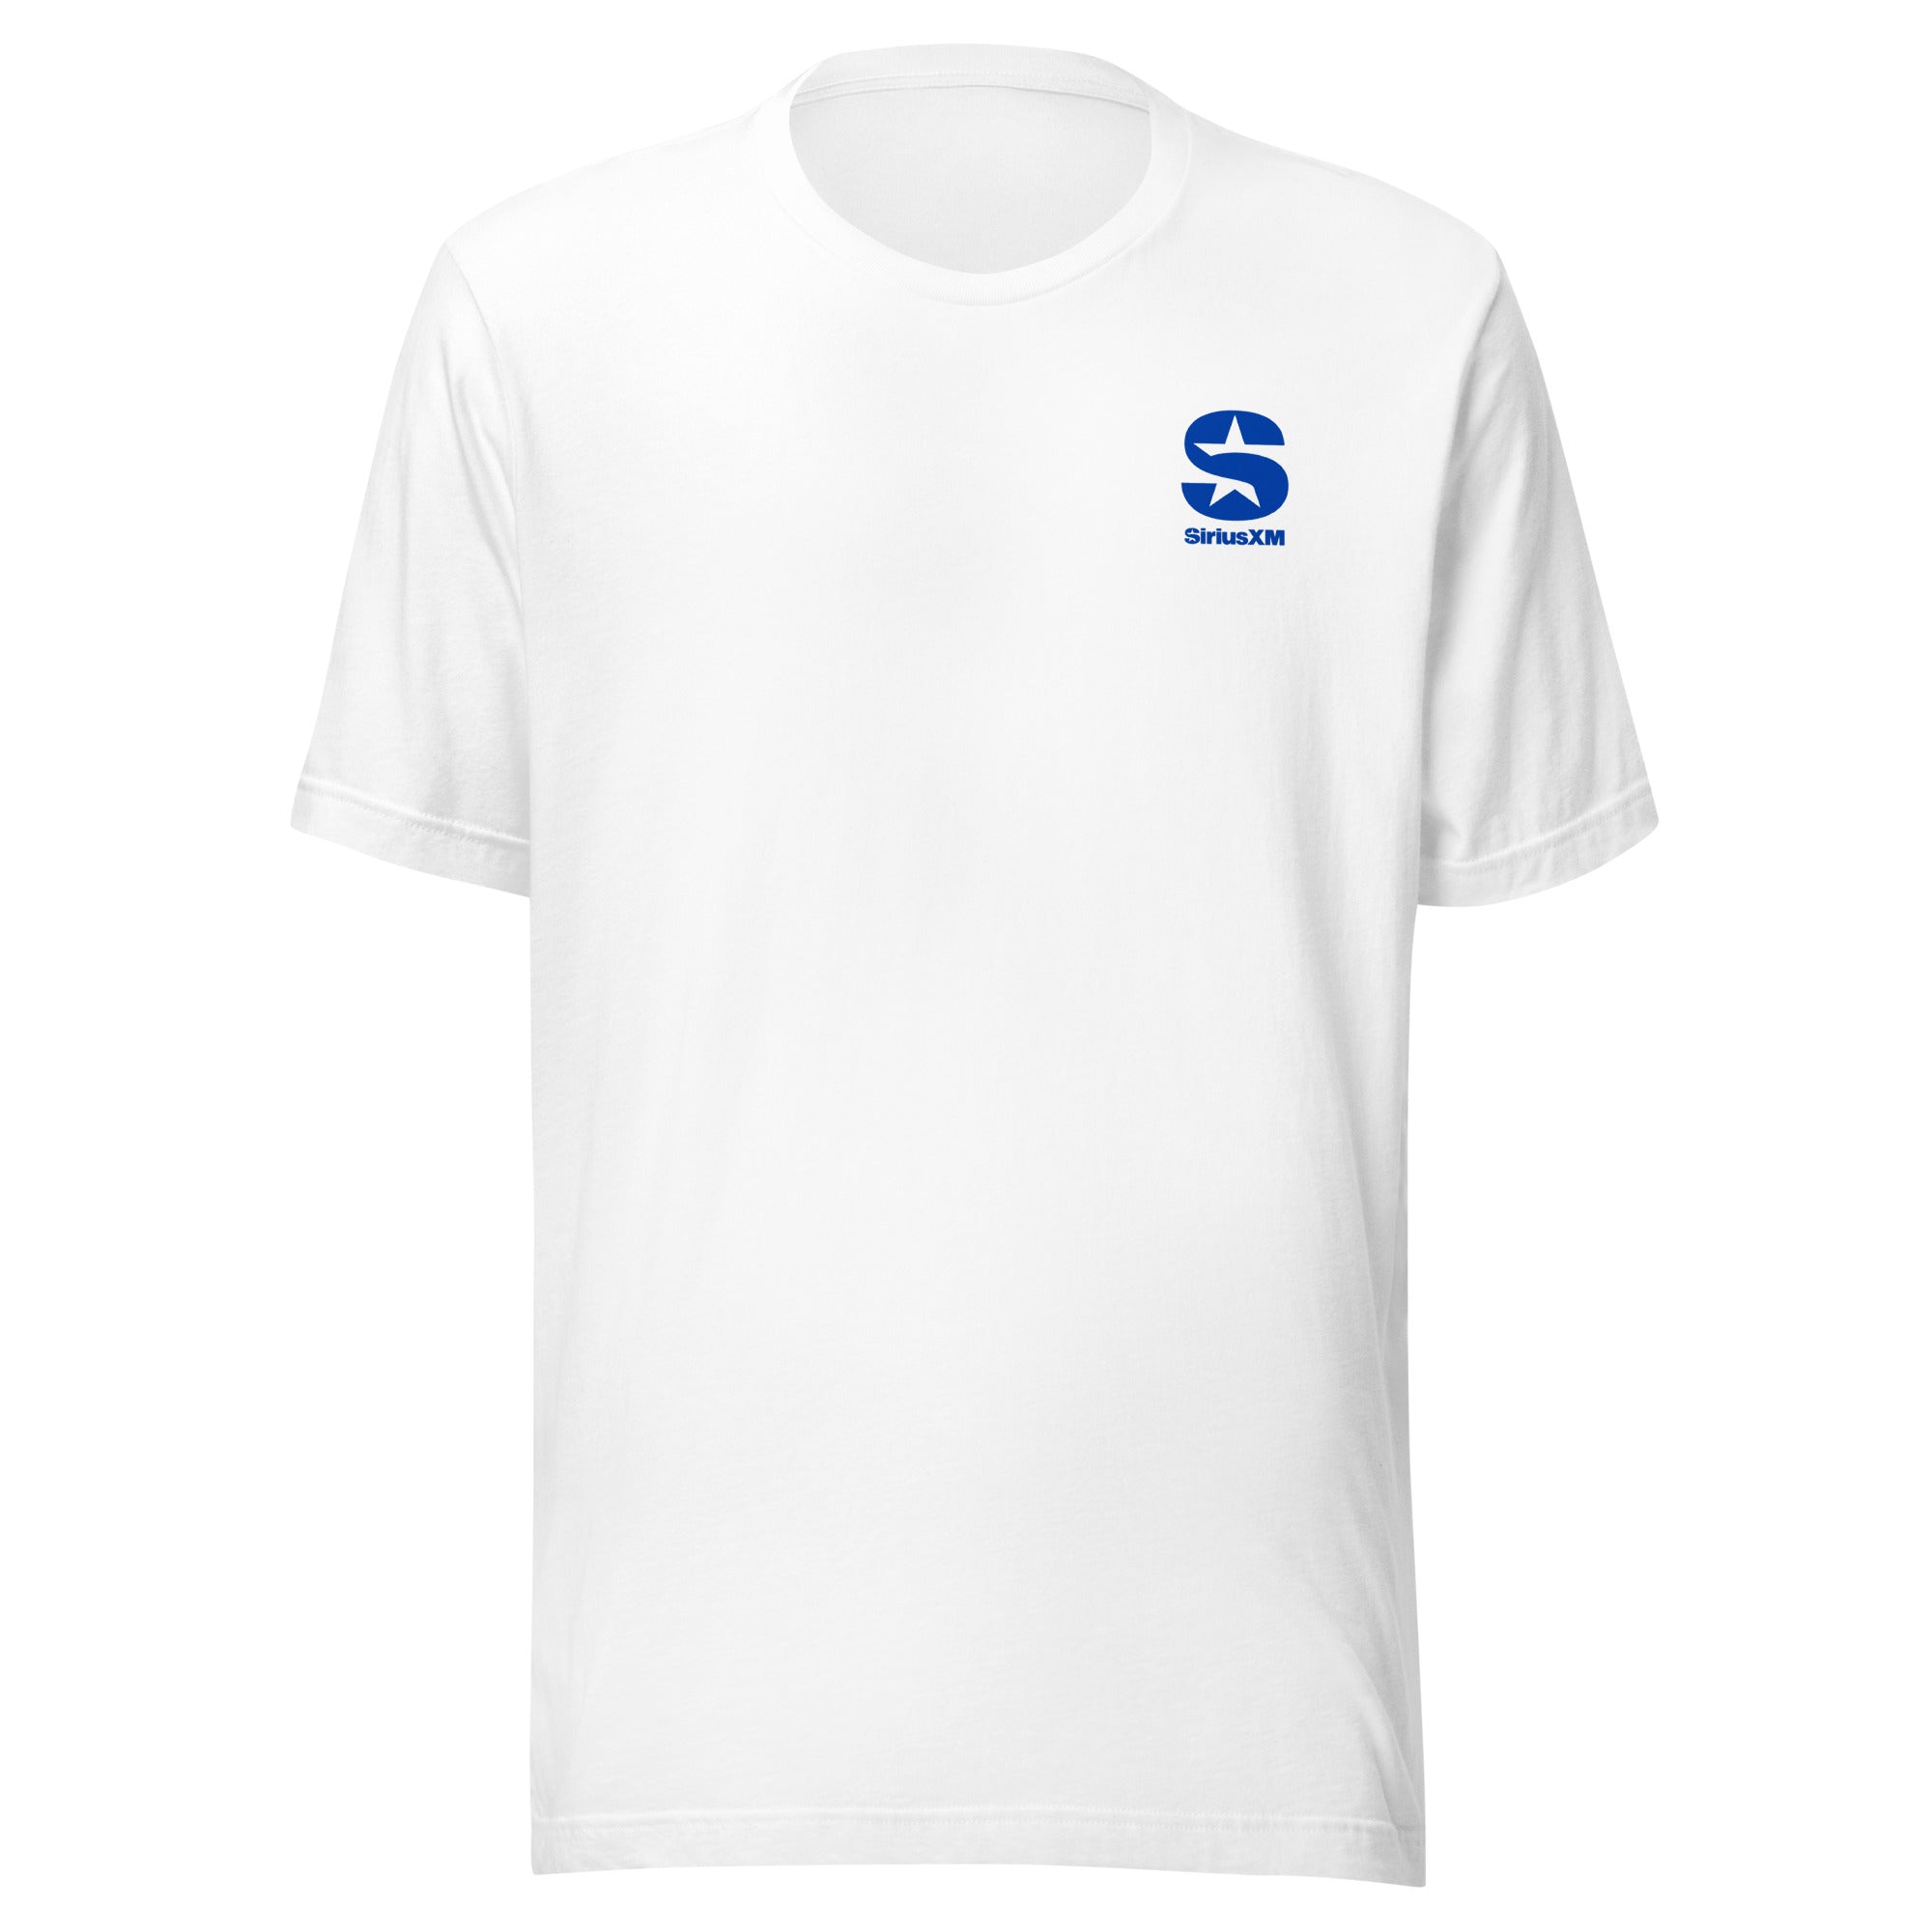 SiriusXM: Next Gen Stella T-shirt